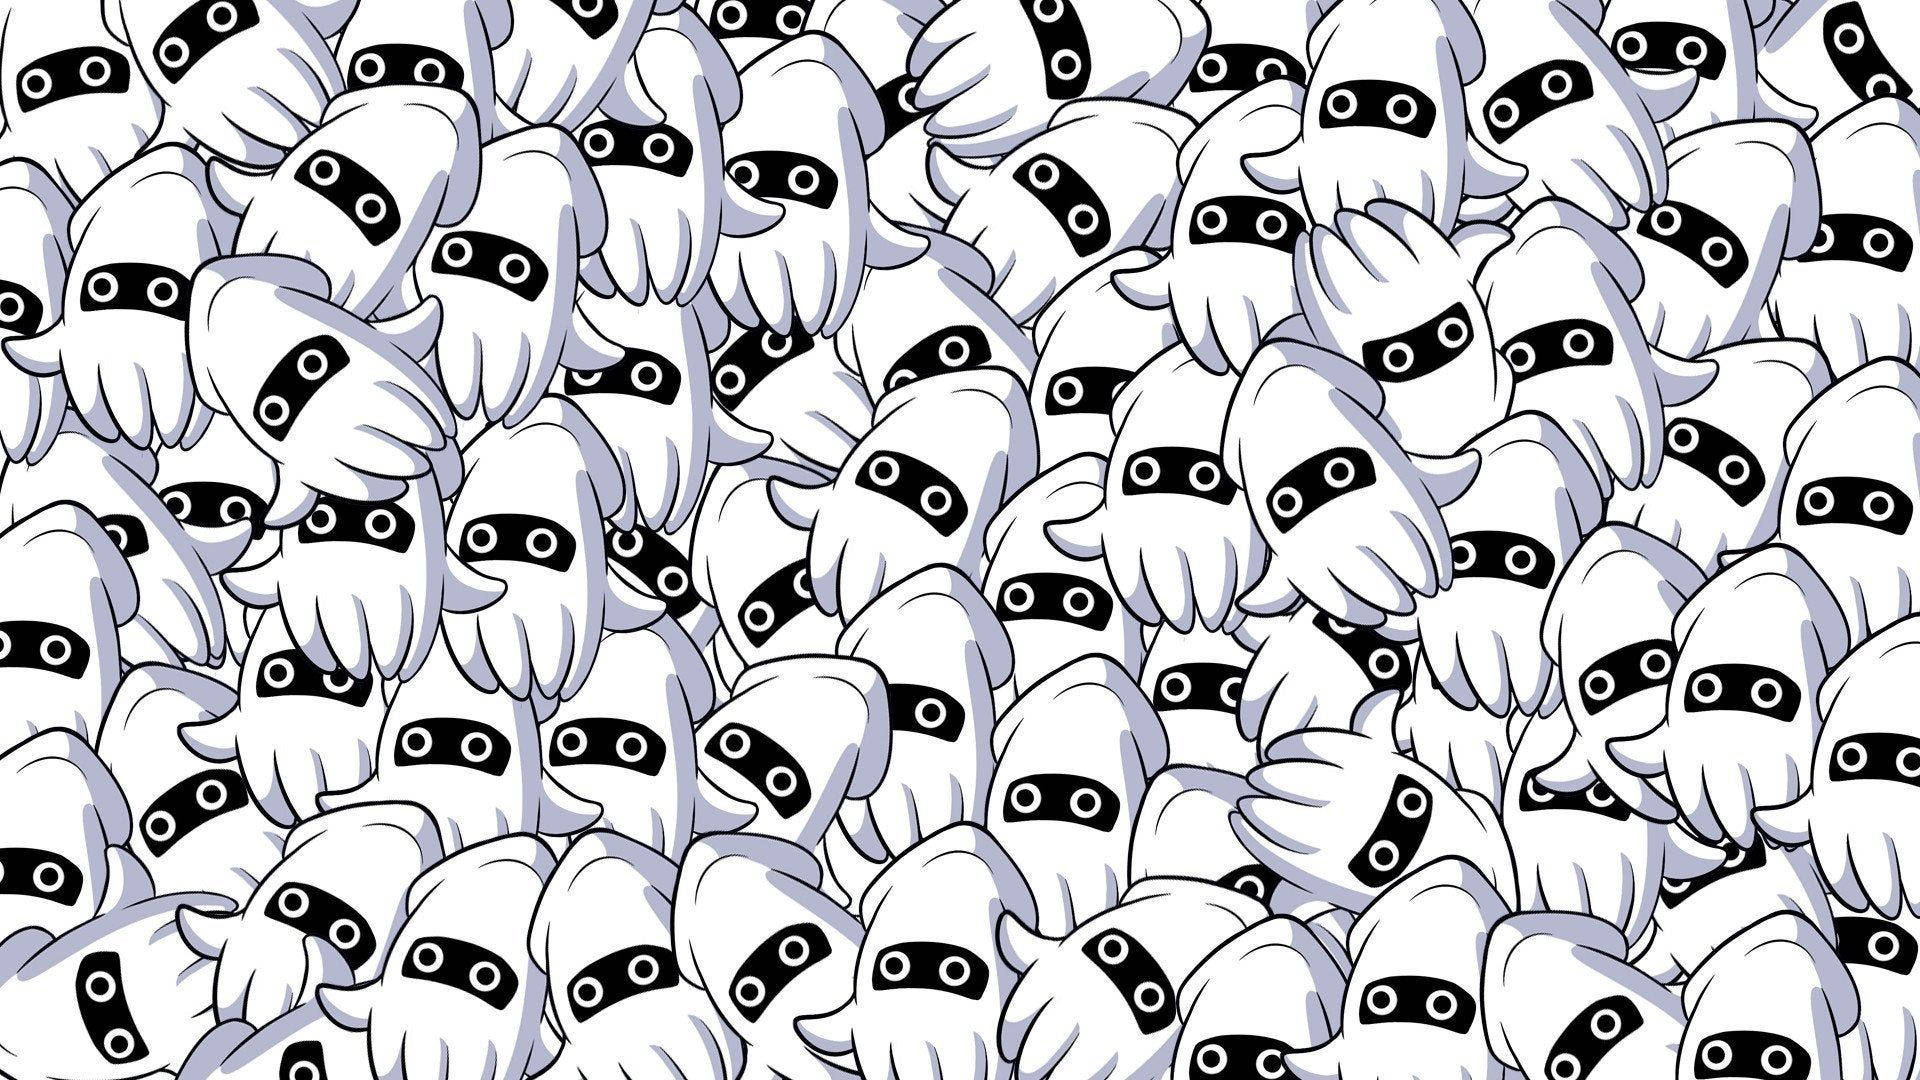 White Calamari Mascots In A Cluster Picture